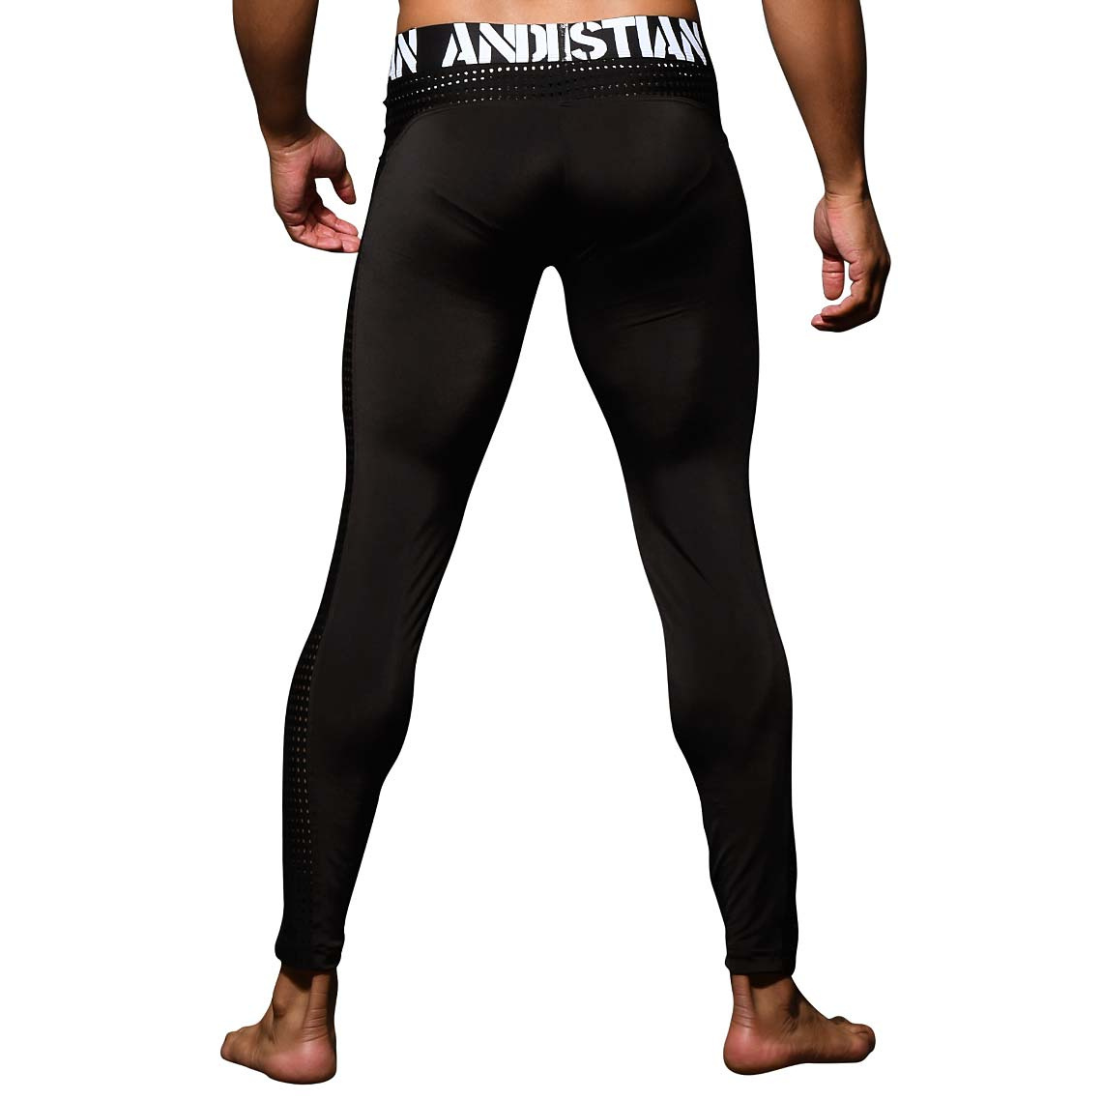 Zwarte heren legging met extra brede tailleband, ontworpen door Andrew Christian. Te koop bij Flavourez.